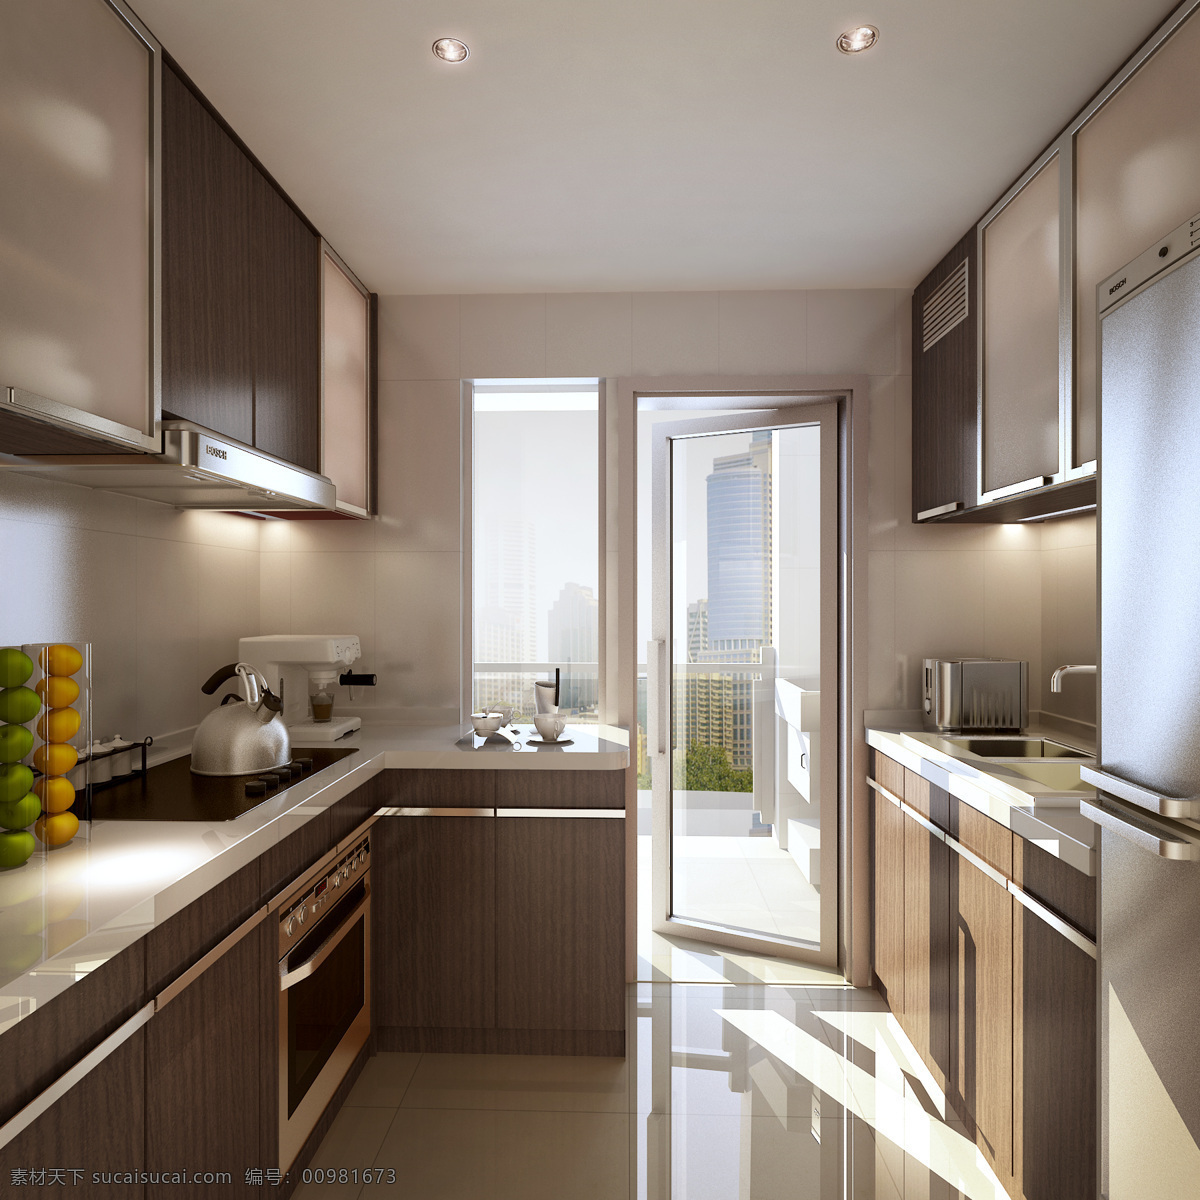 淡雅 厨房 3d设计模型 3d源文件 max 清新 室内模型 水果 源文件 淡雅厨房 白天的厨房 欧式厨房 3d模型素材 其他3d模型